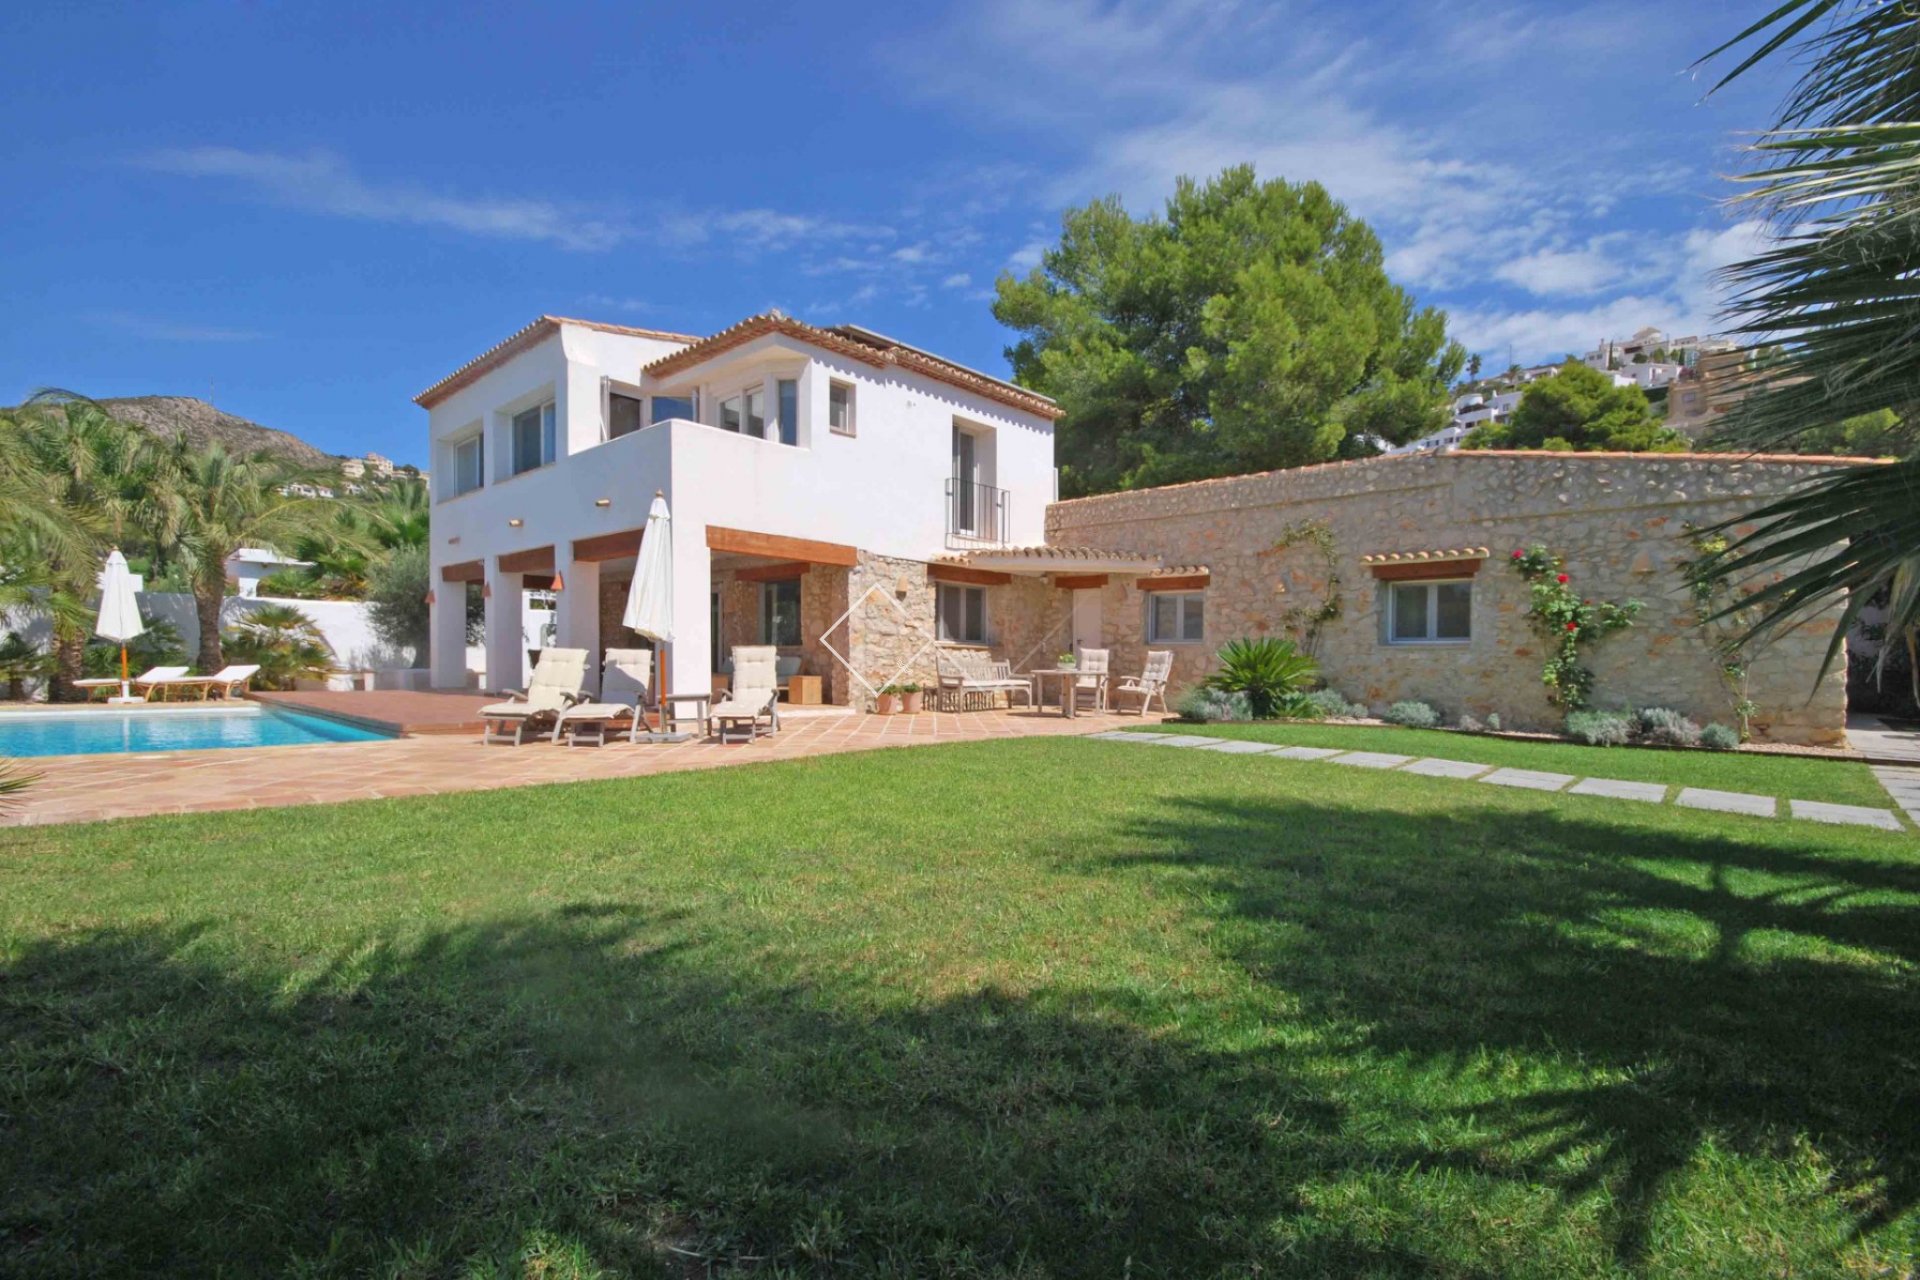 -jardin y maison A vendre : superbe villa à El Portet, Moraira à seulement 300m de la plage